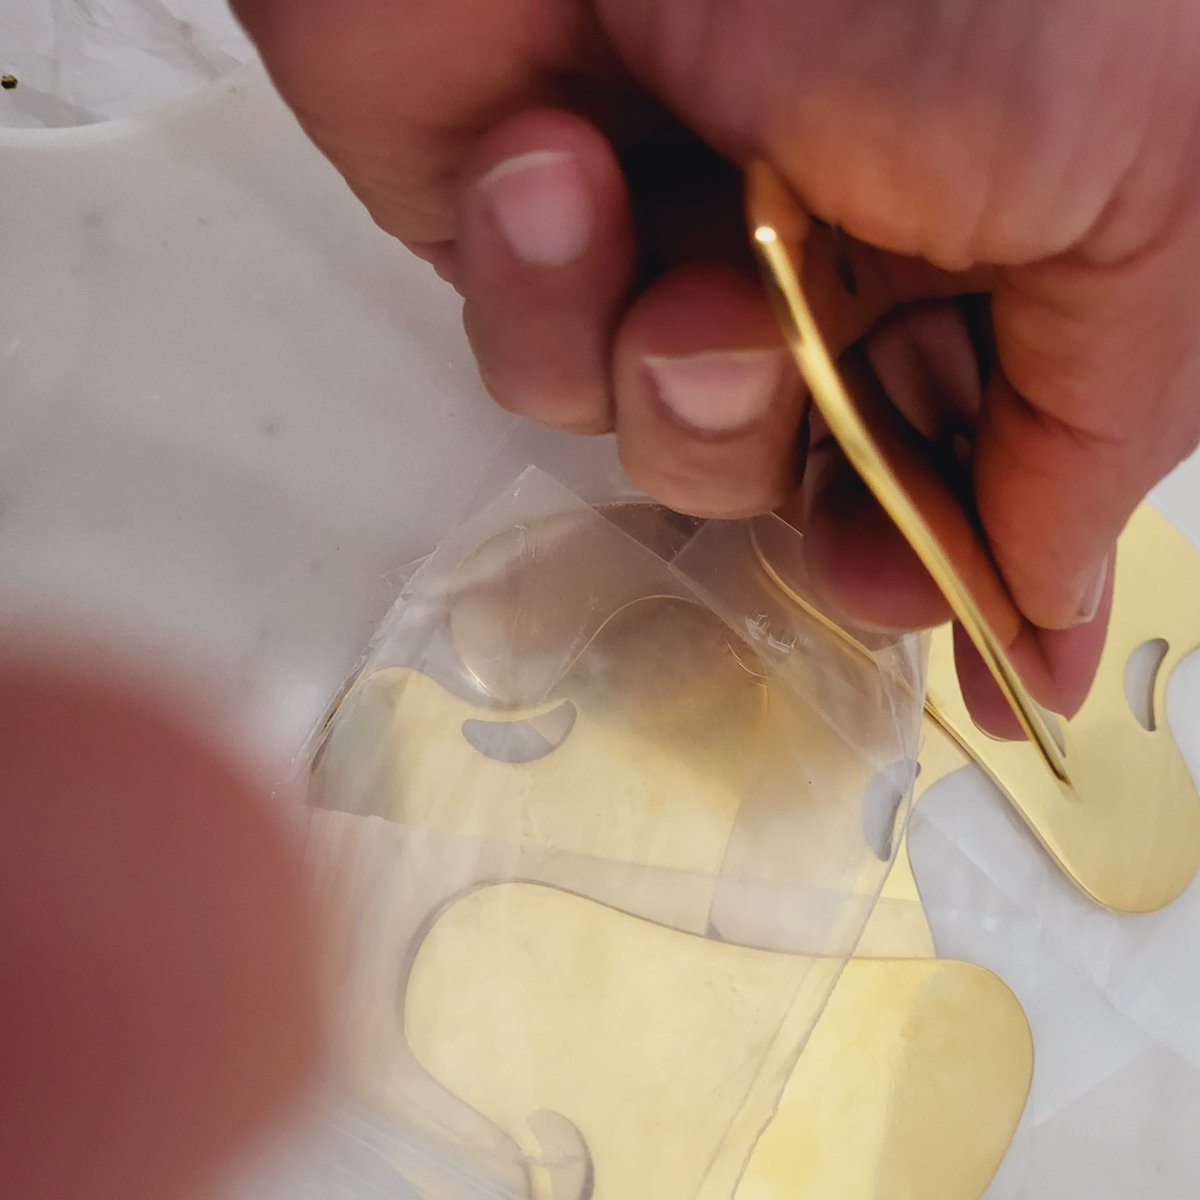 Yellow Gold Steel Guasha Blanks 5 Pack Steel Laser Engraving Blanks